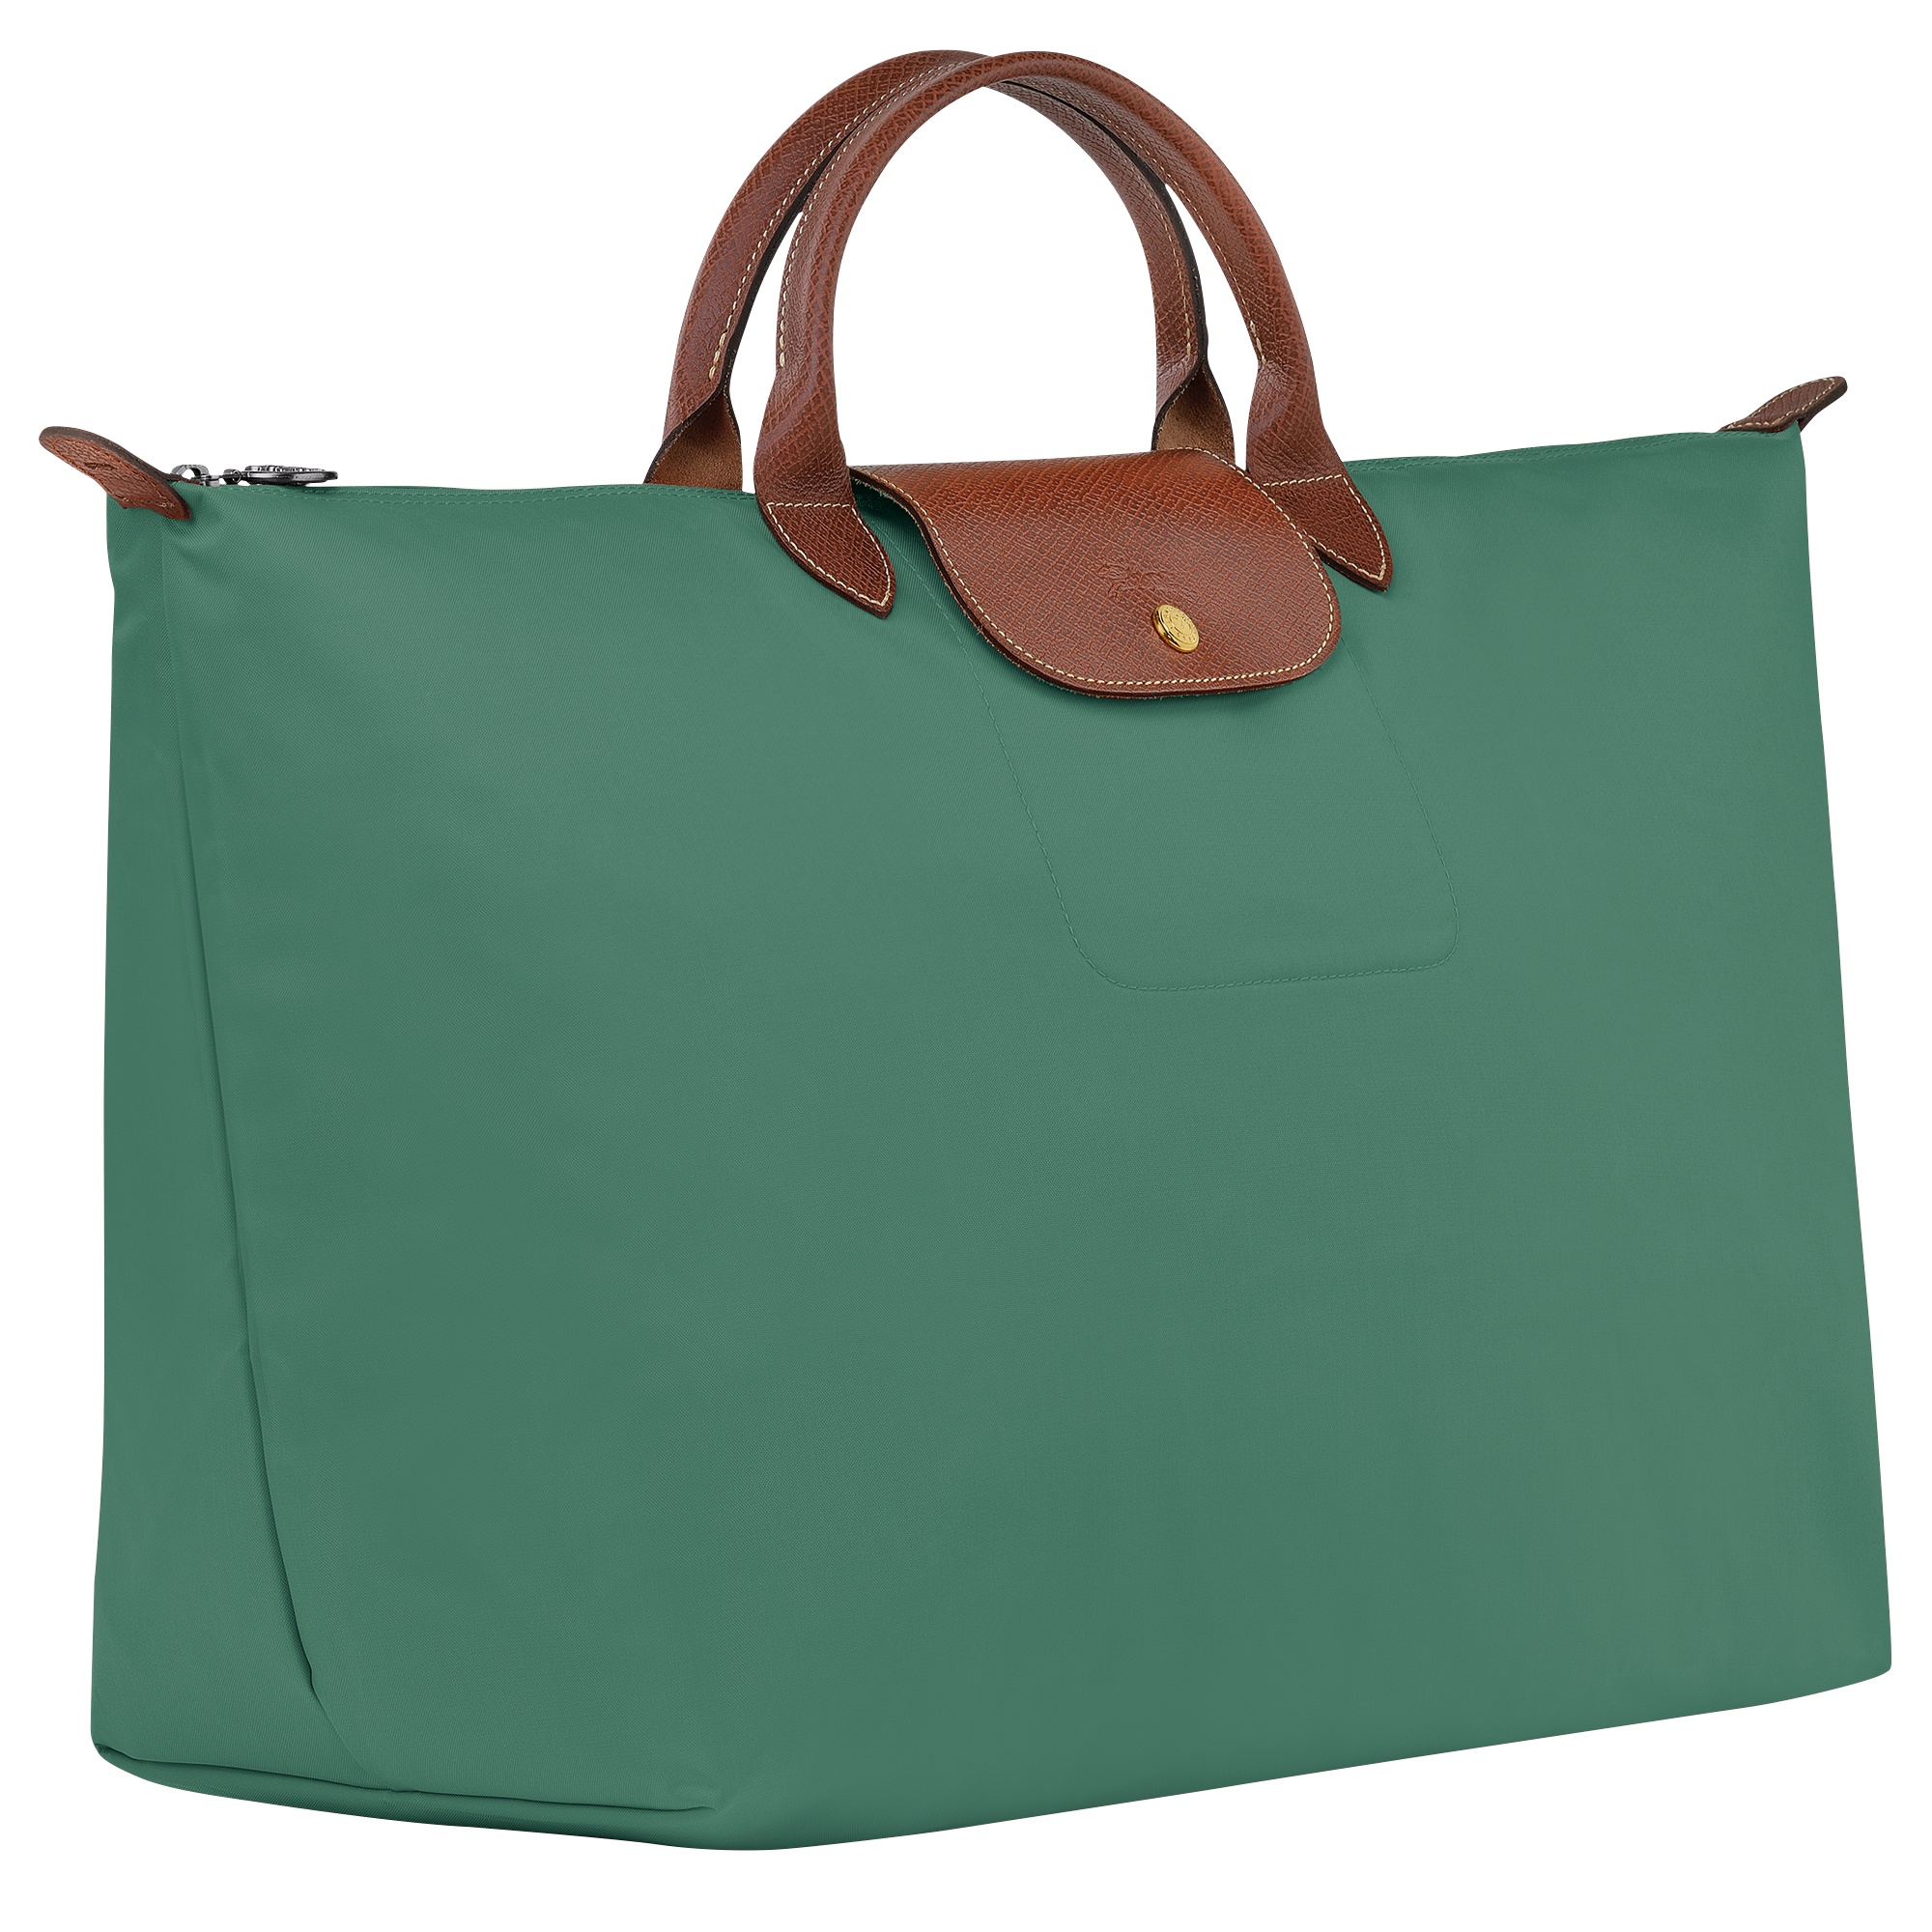 Le Pliage Original Travel bag S